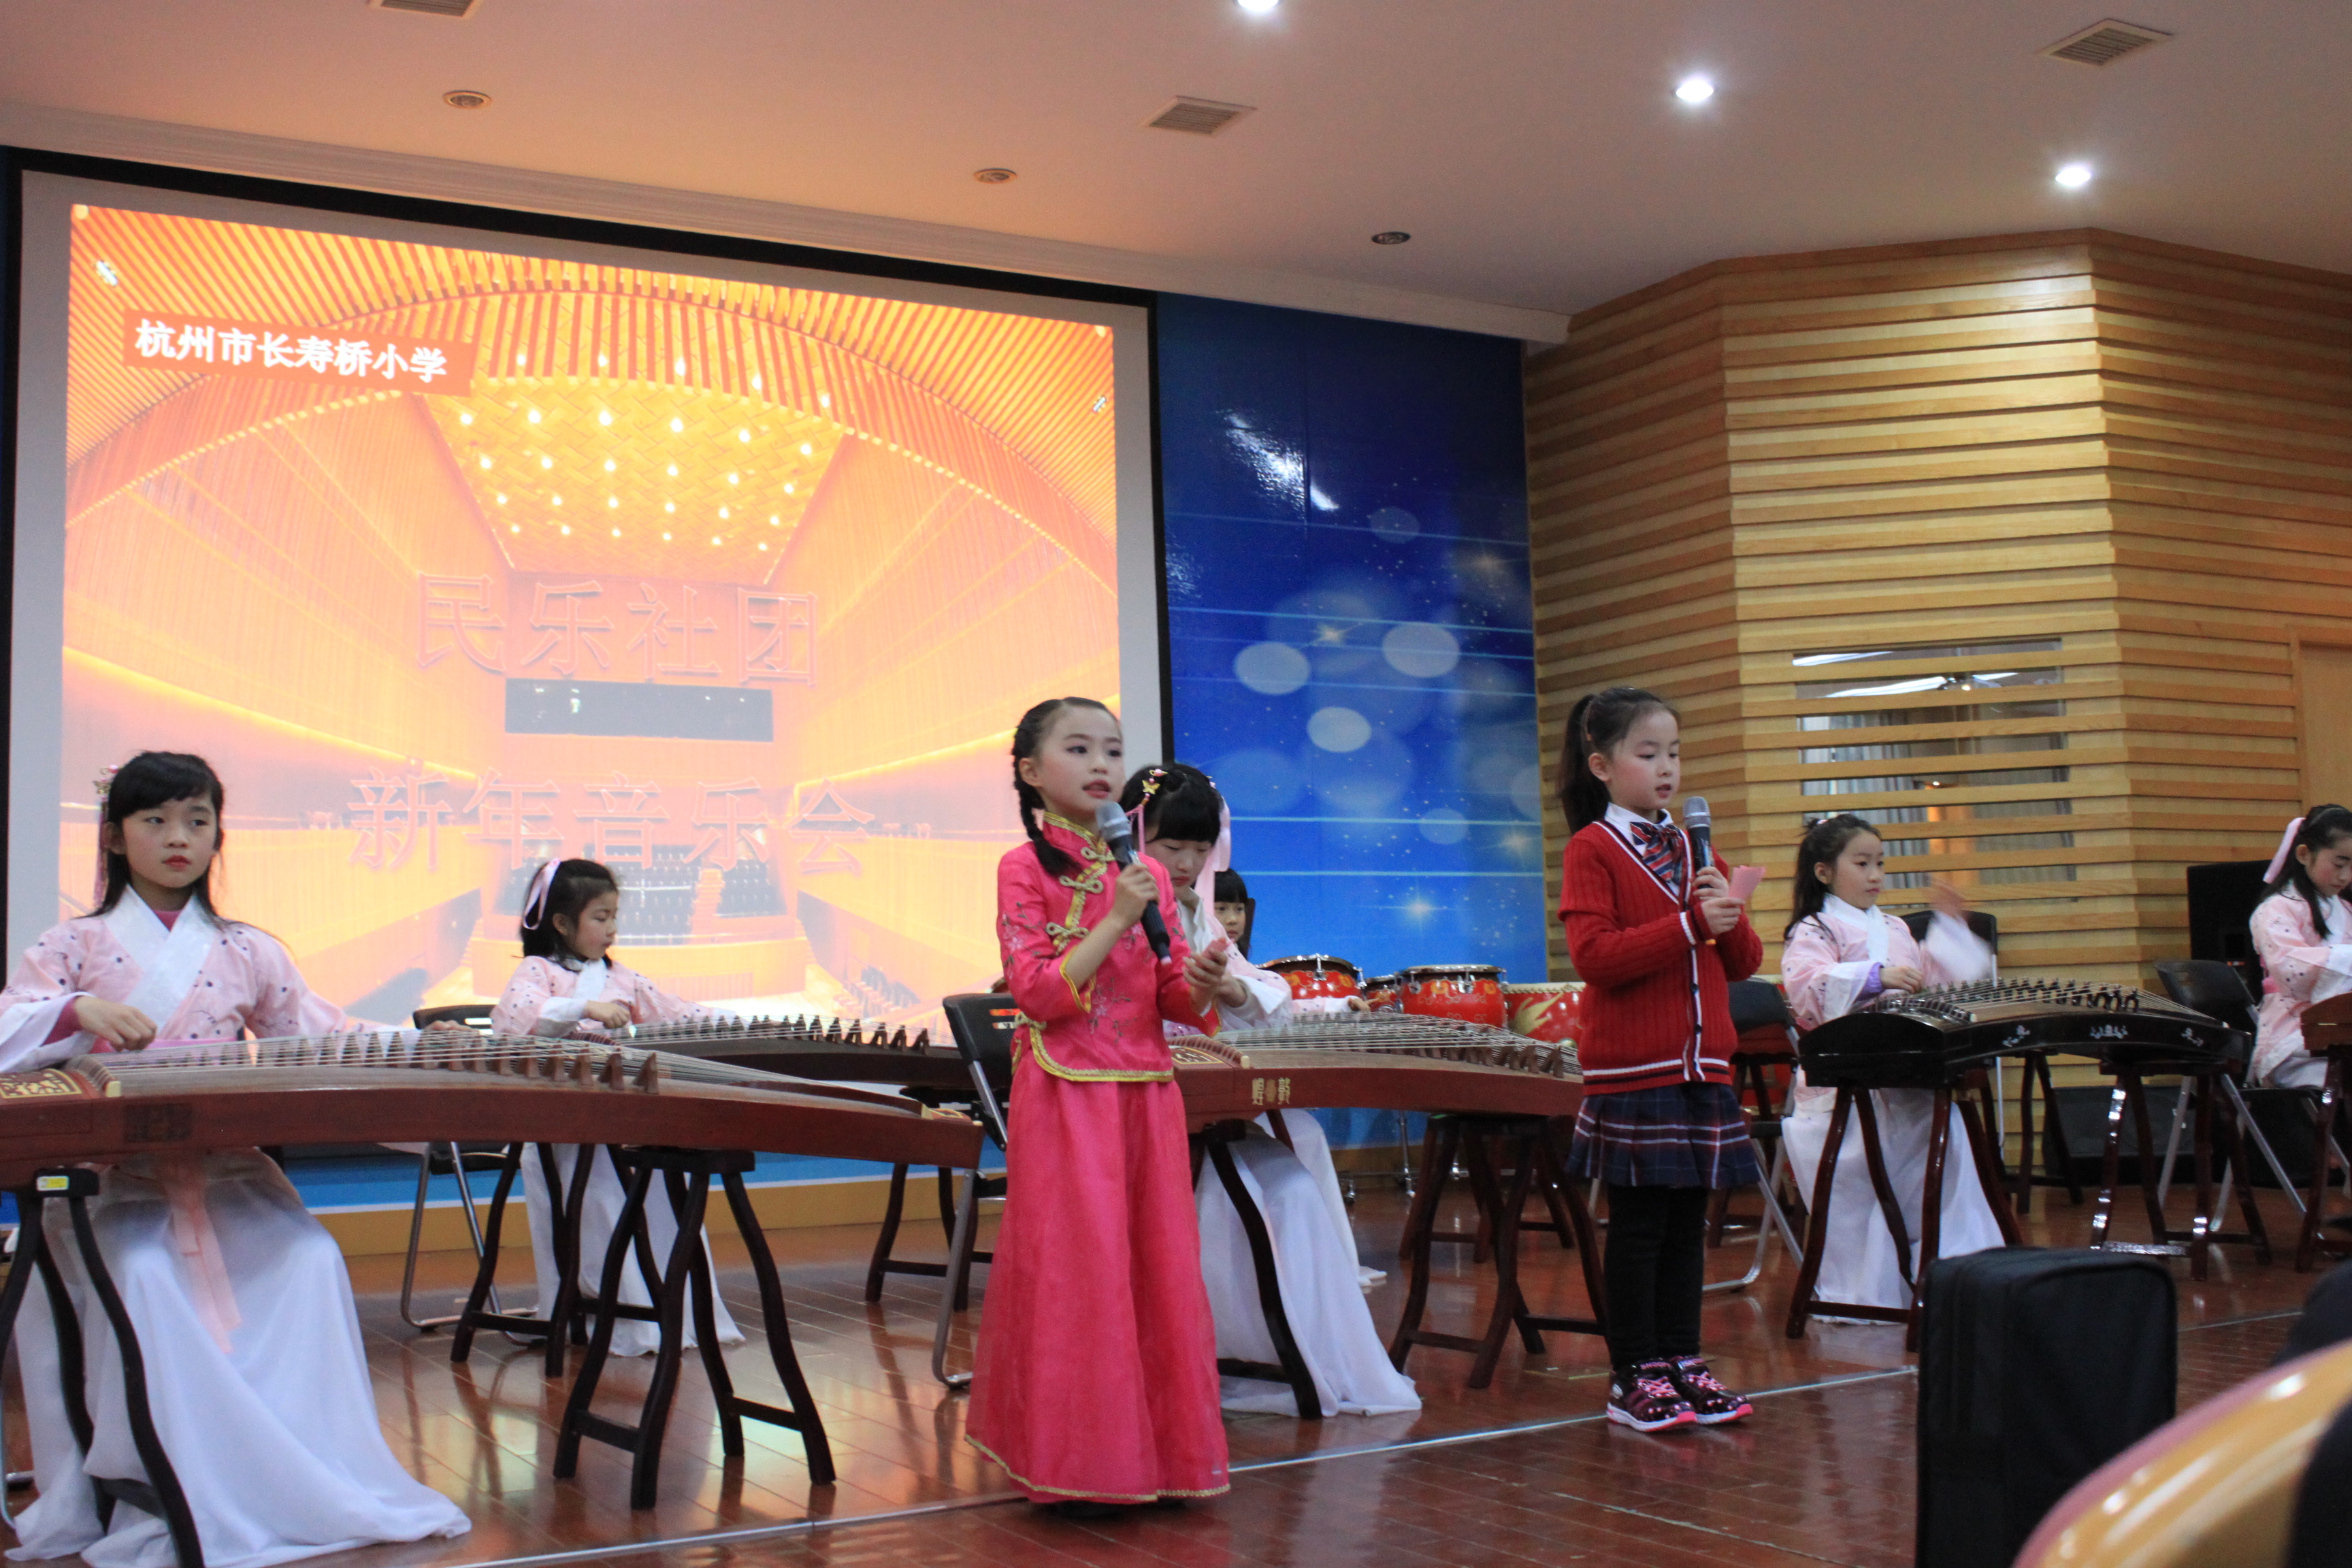 欣赏民族音乐感受传统文化杭州市长寿桥小学民乐联合汇报音乐会